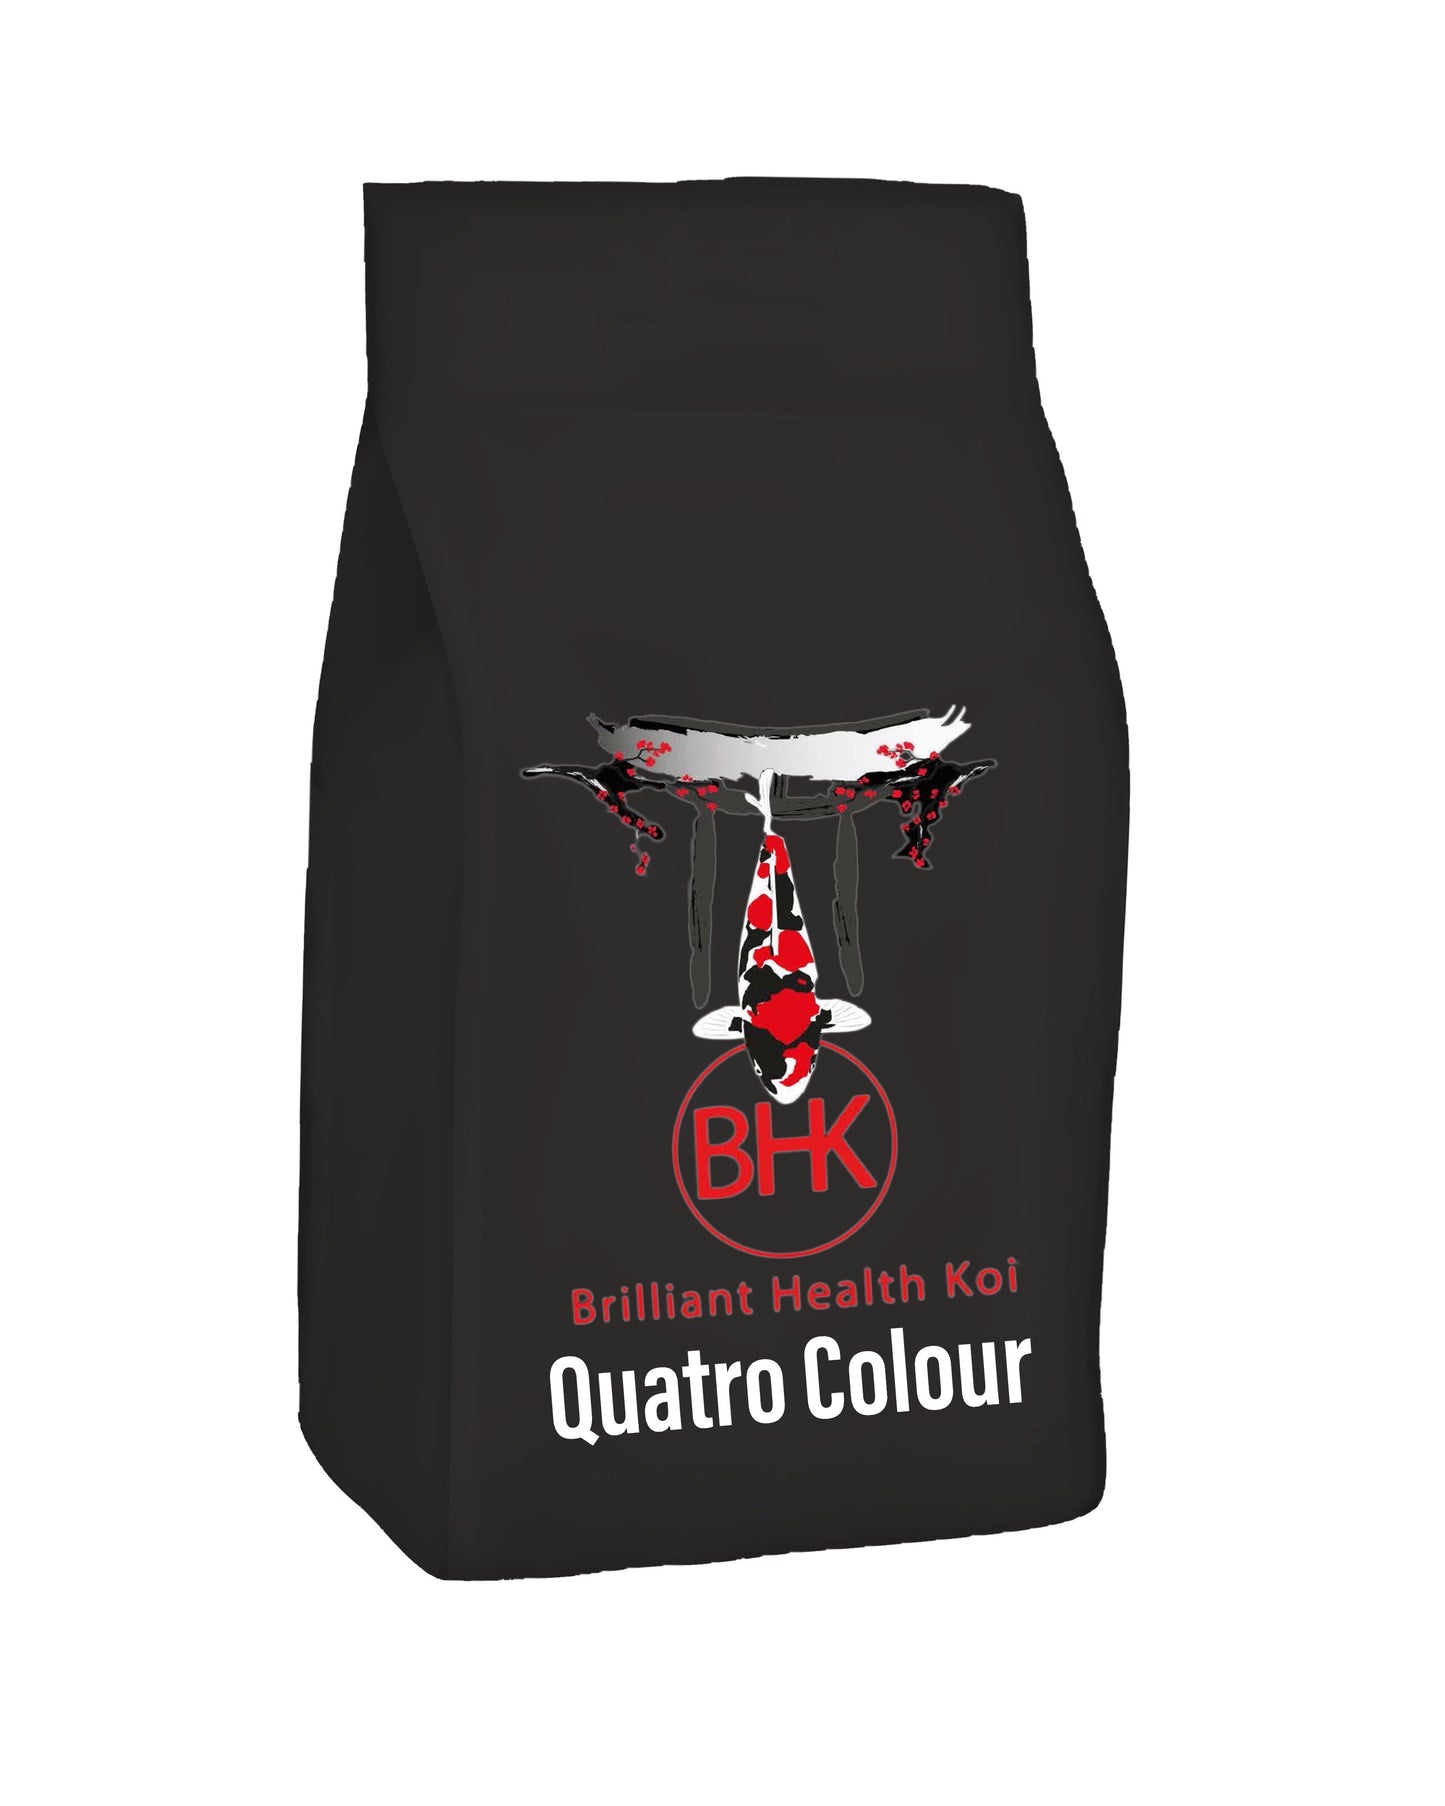 BHK Quatro Colour